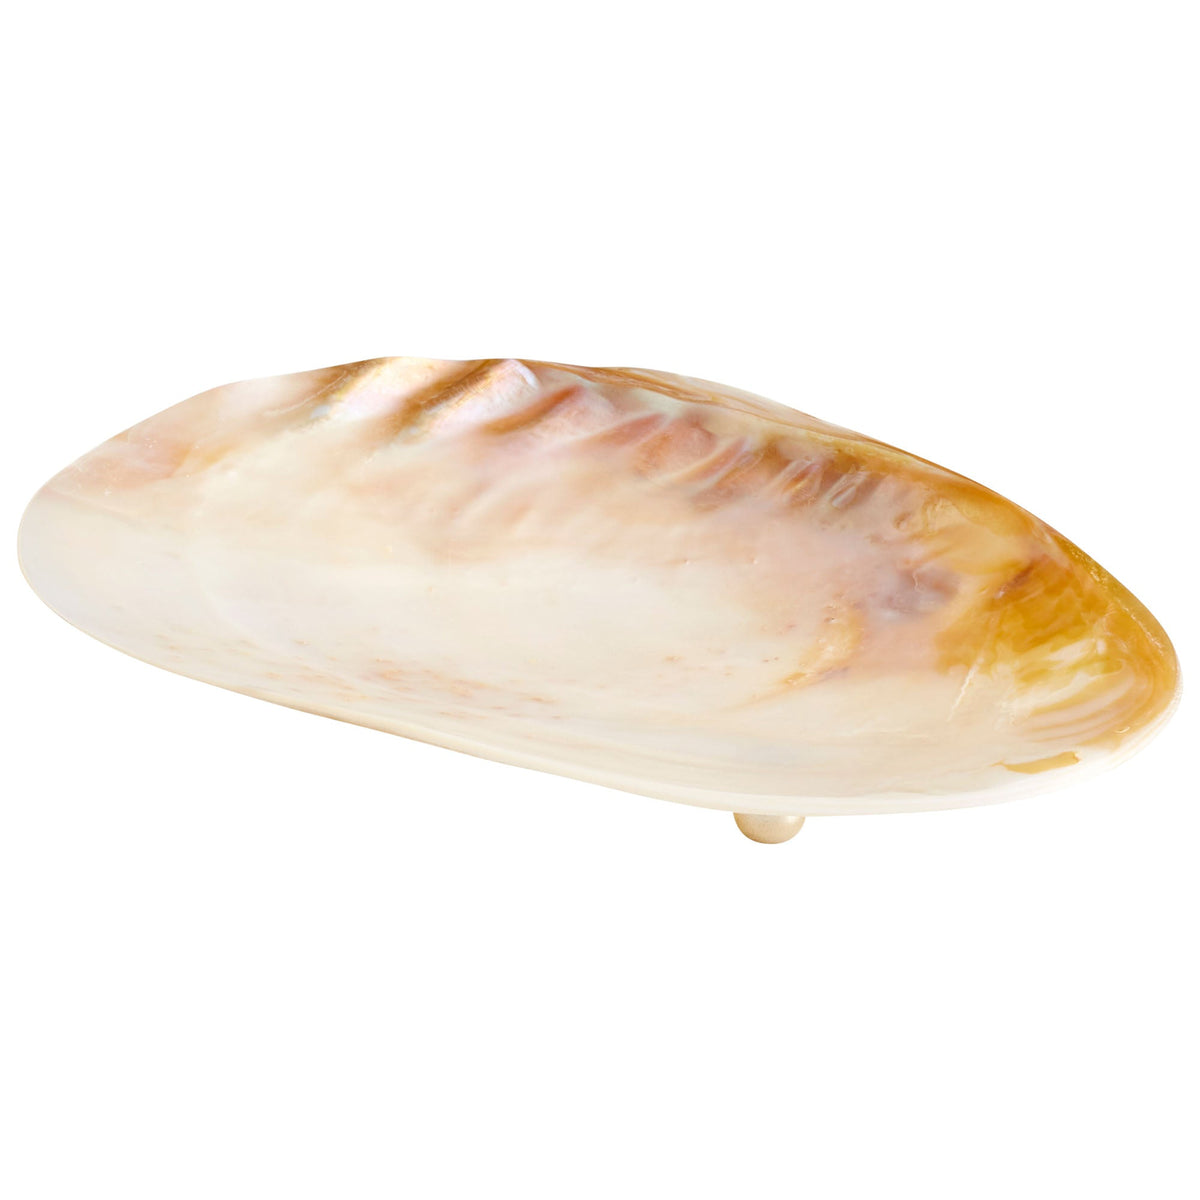 Small Abalone Tray by Cyan